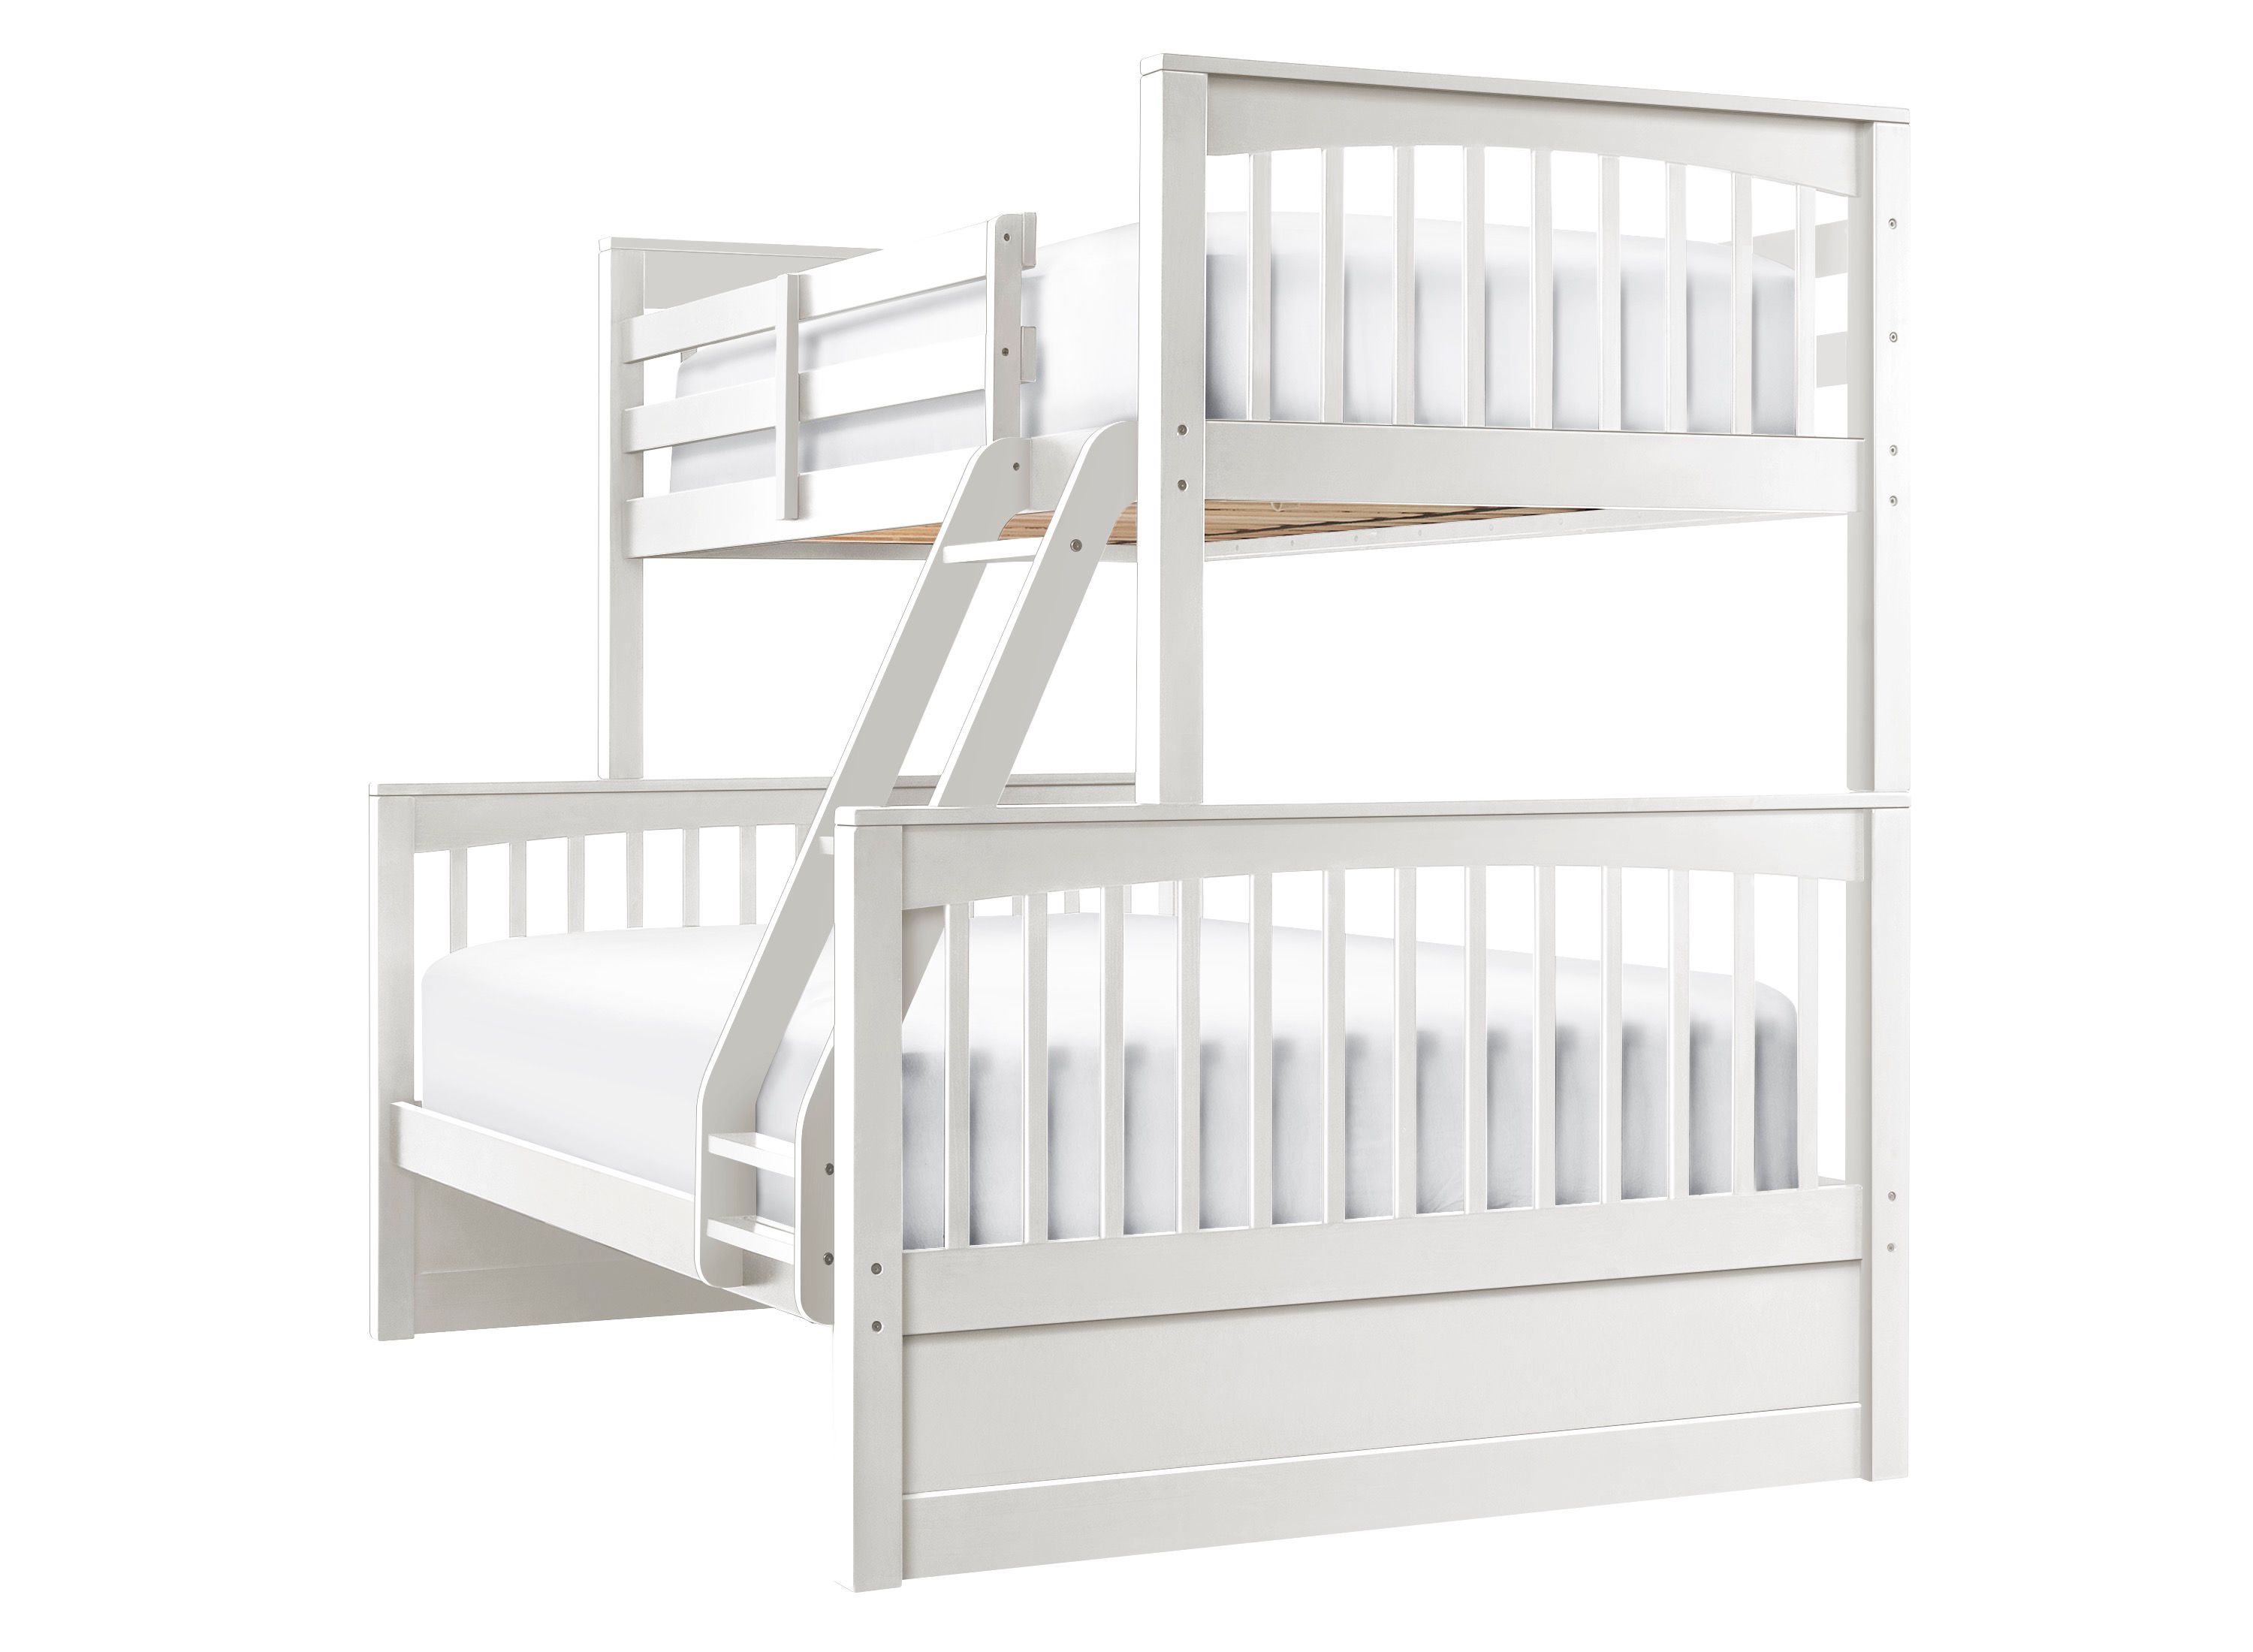 jordan's furniture bunk beds